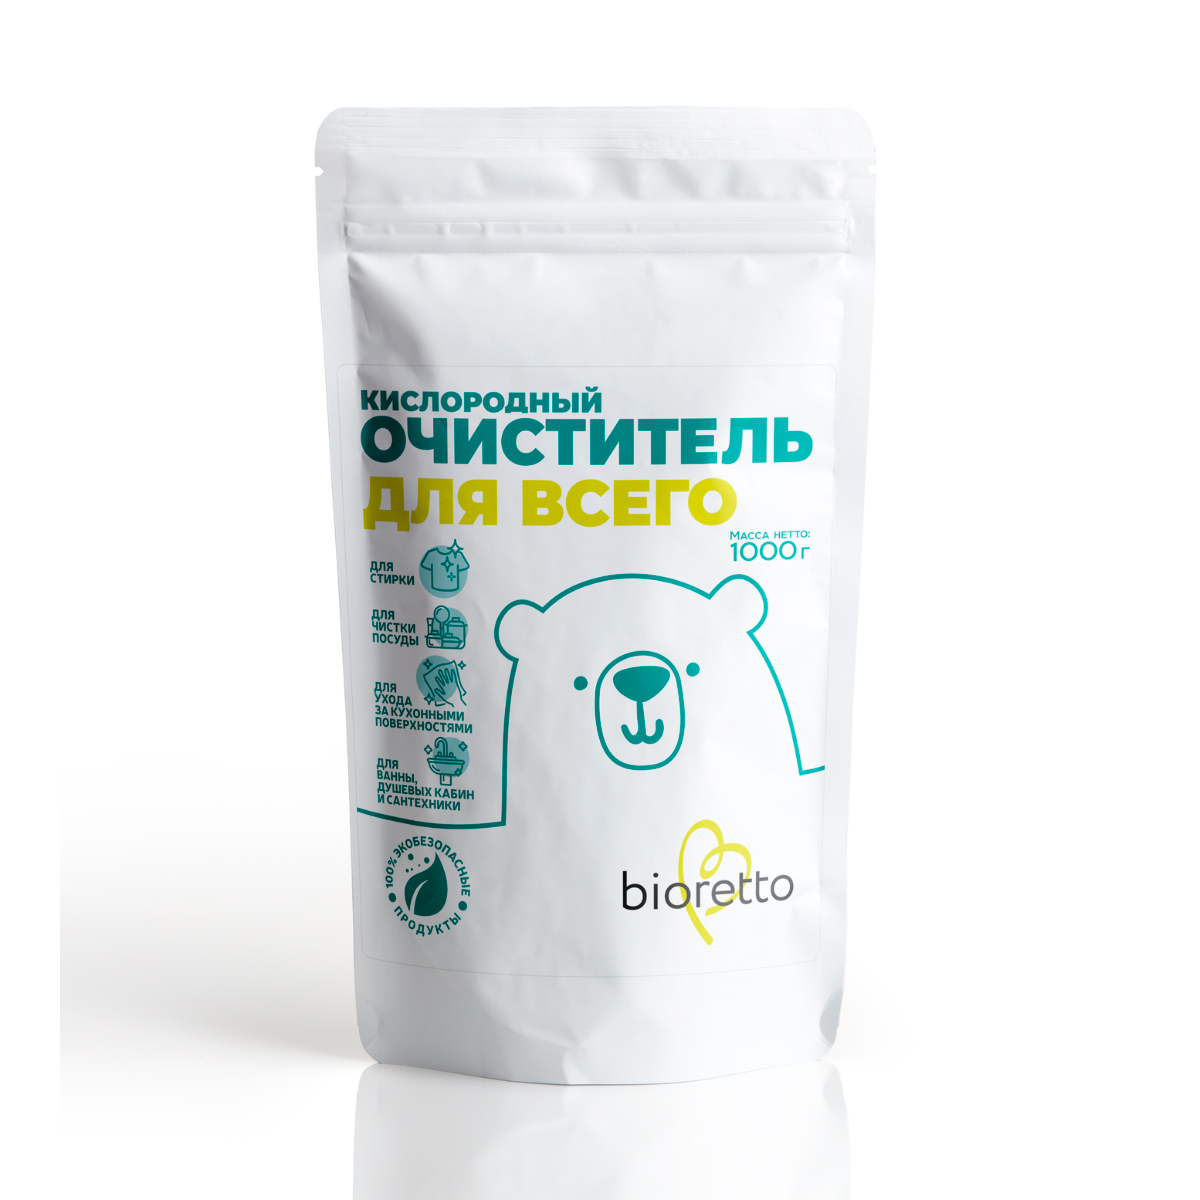 Кислородный очиститель для всего Bioretto Bio, 1кг очиститель кожи kenotek